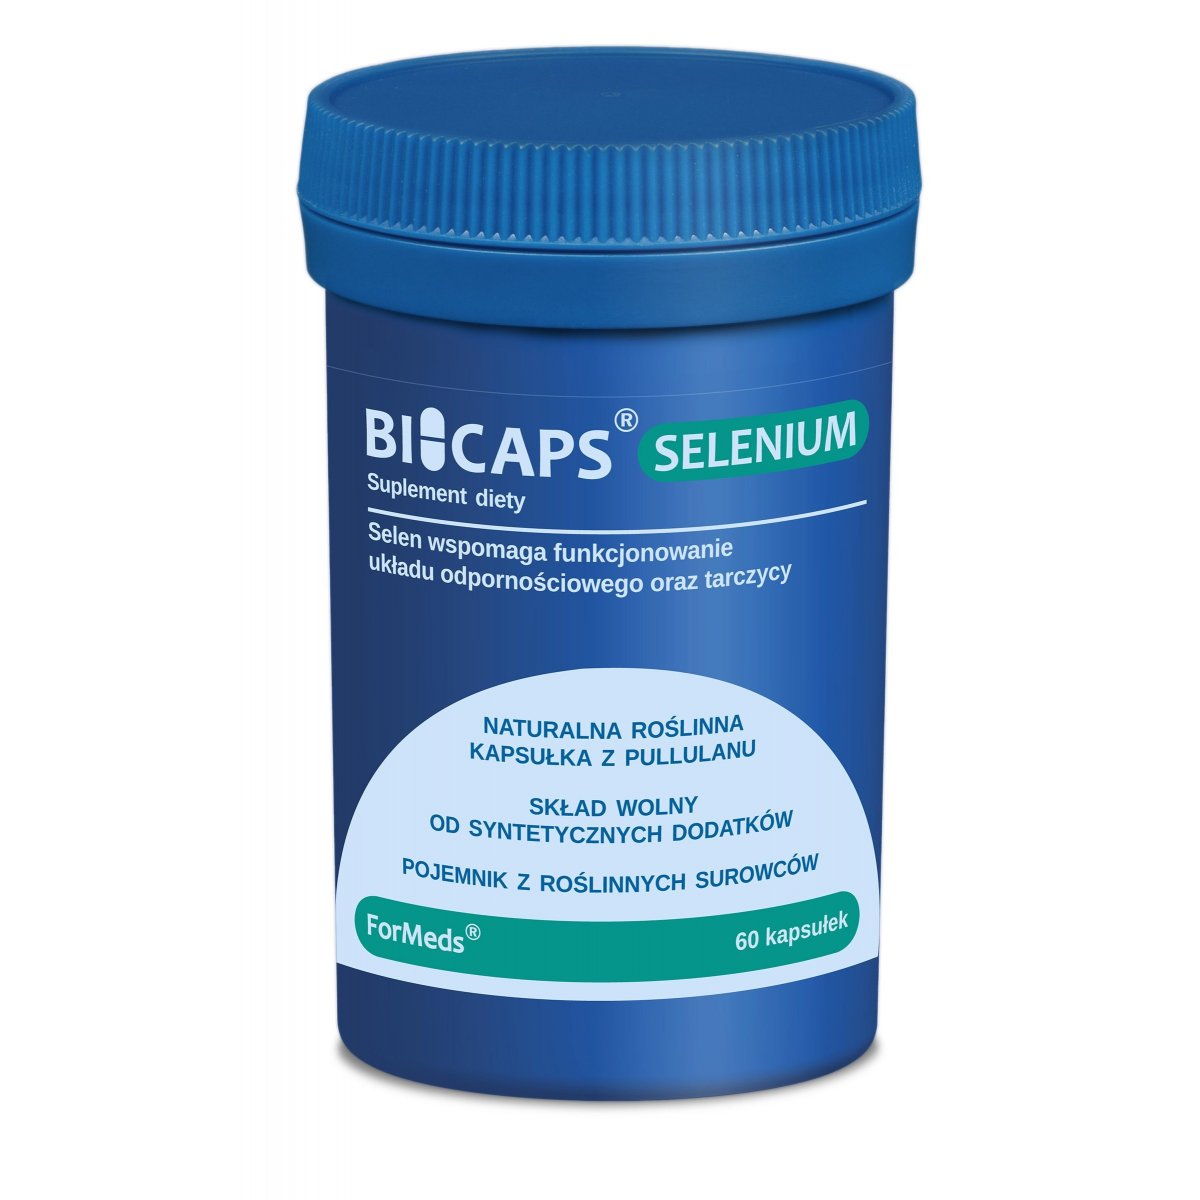 BICAPS selenium